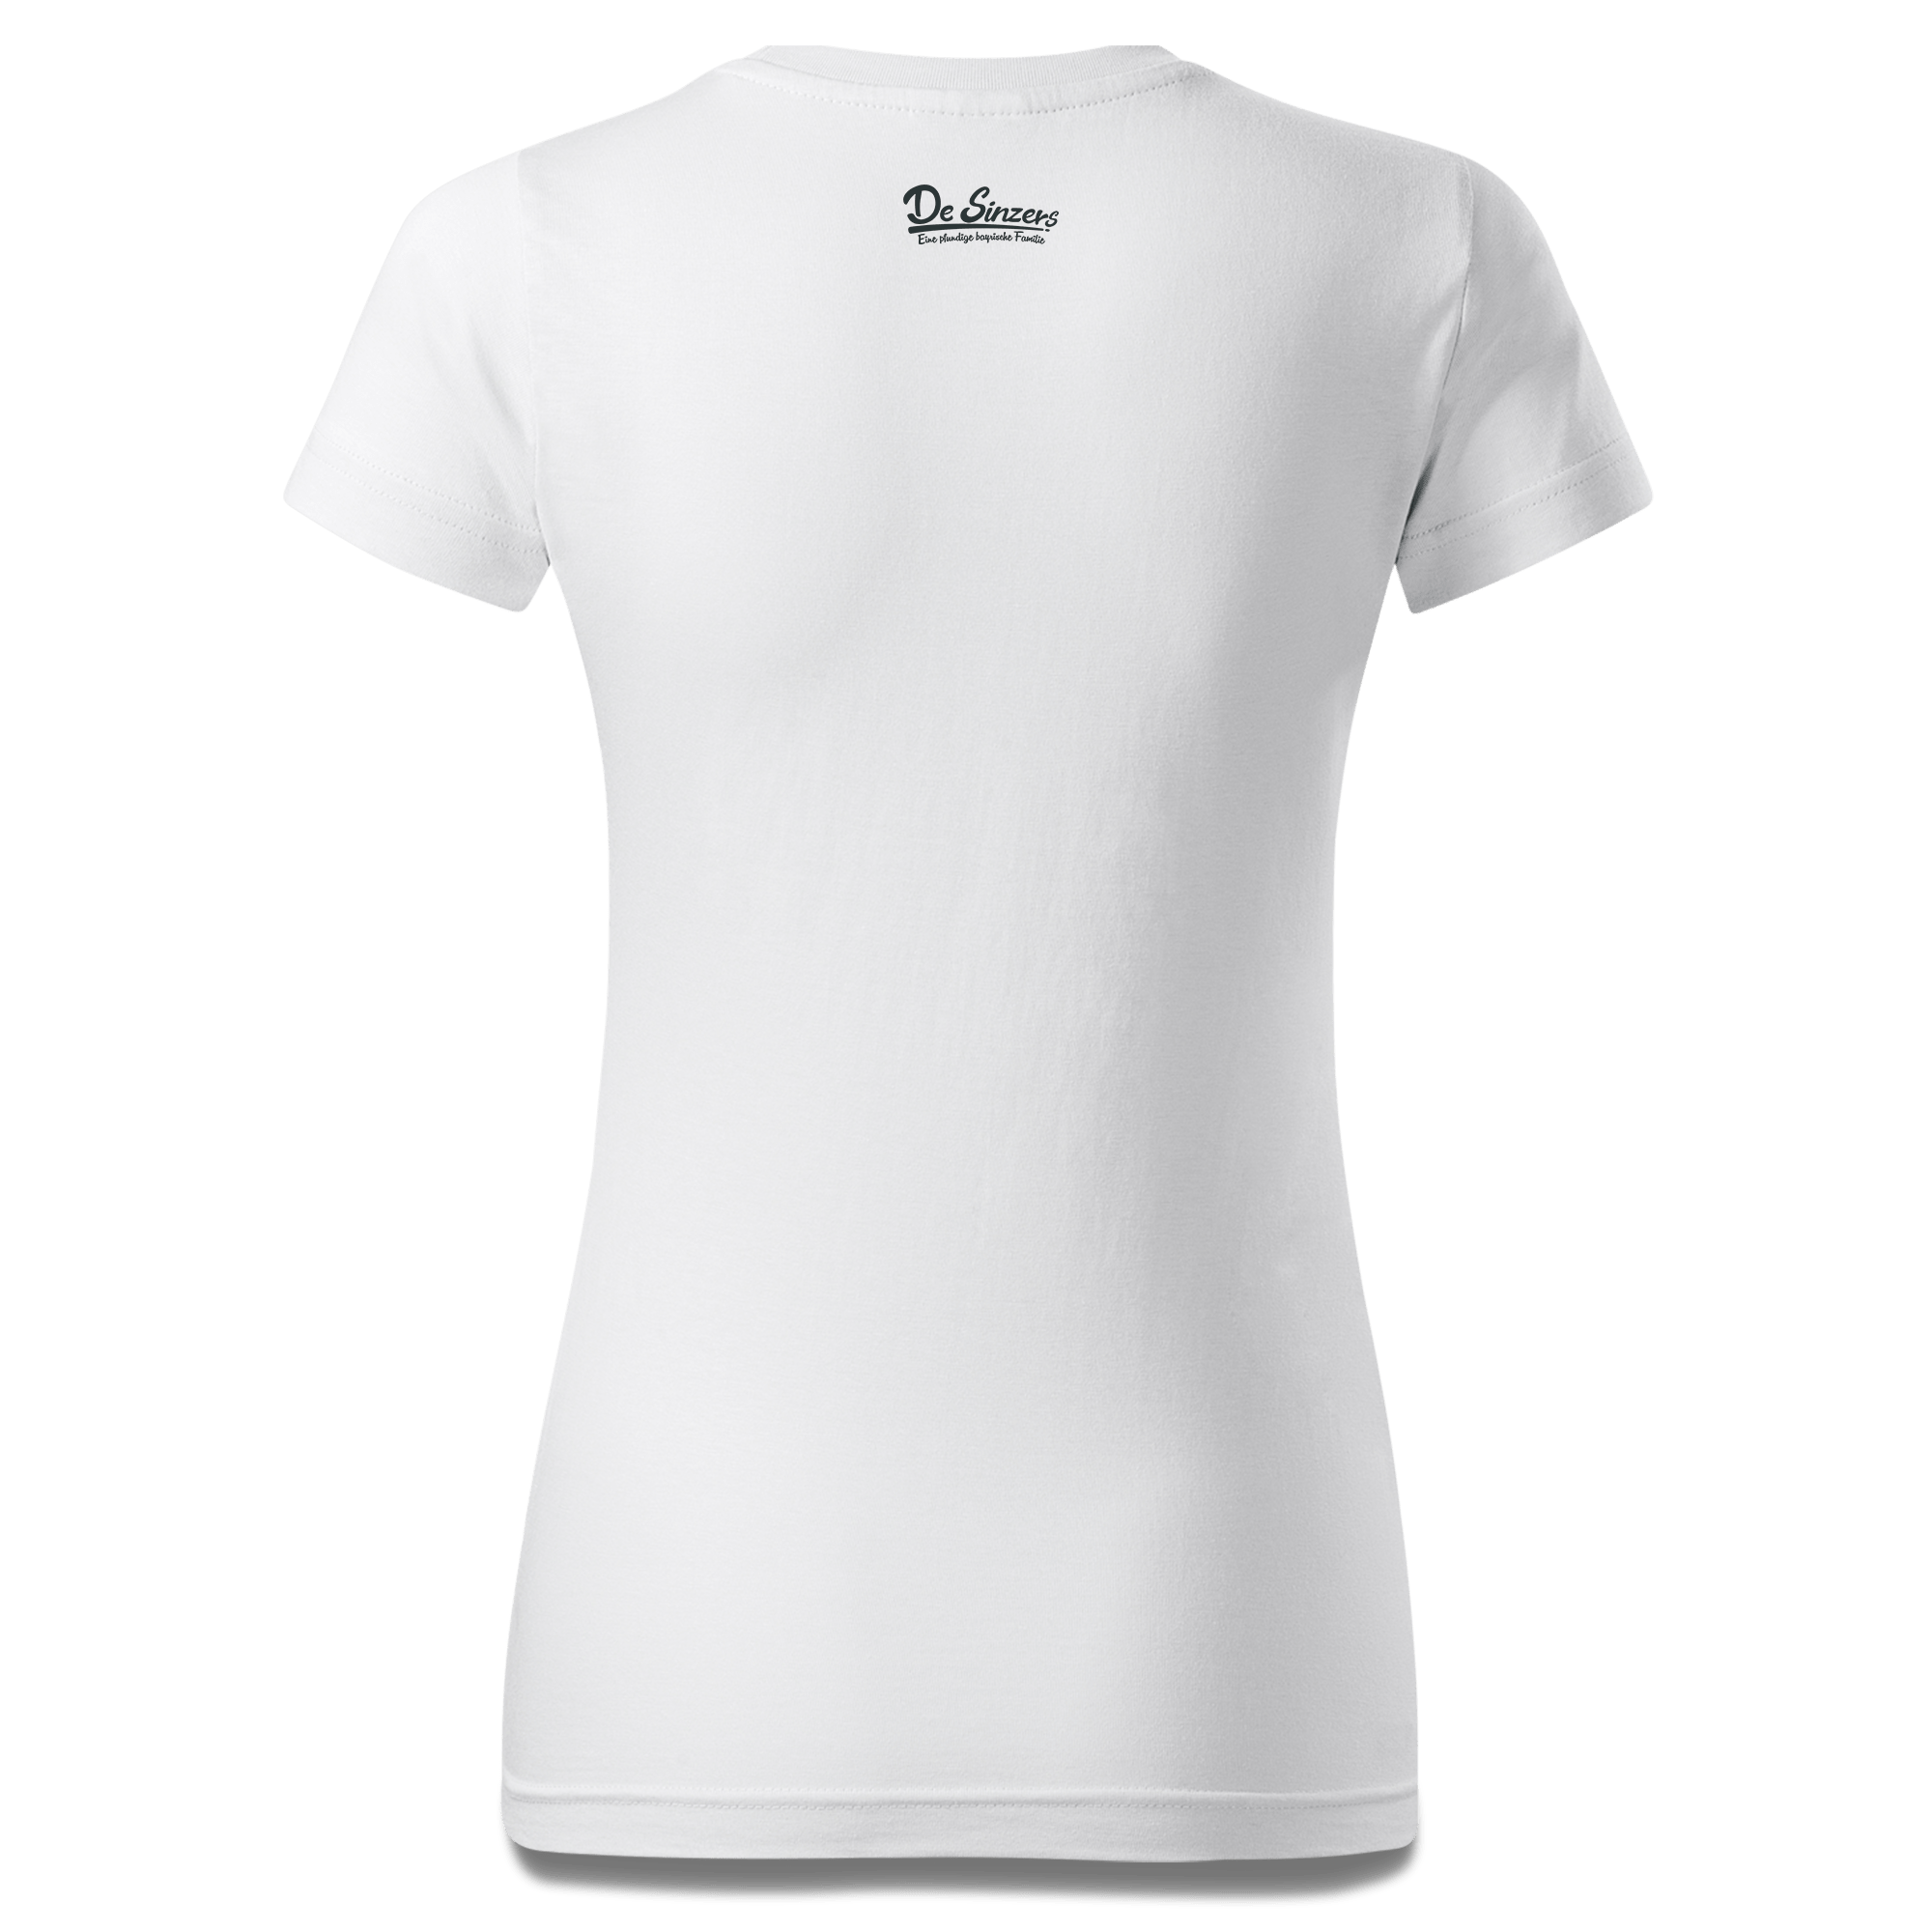 Die Sinzerin Goasslschnoizer T Shirt Damen Weiss Gehering Back